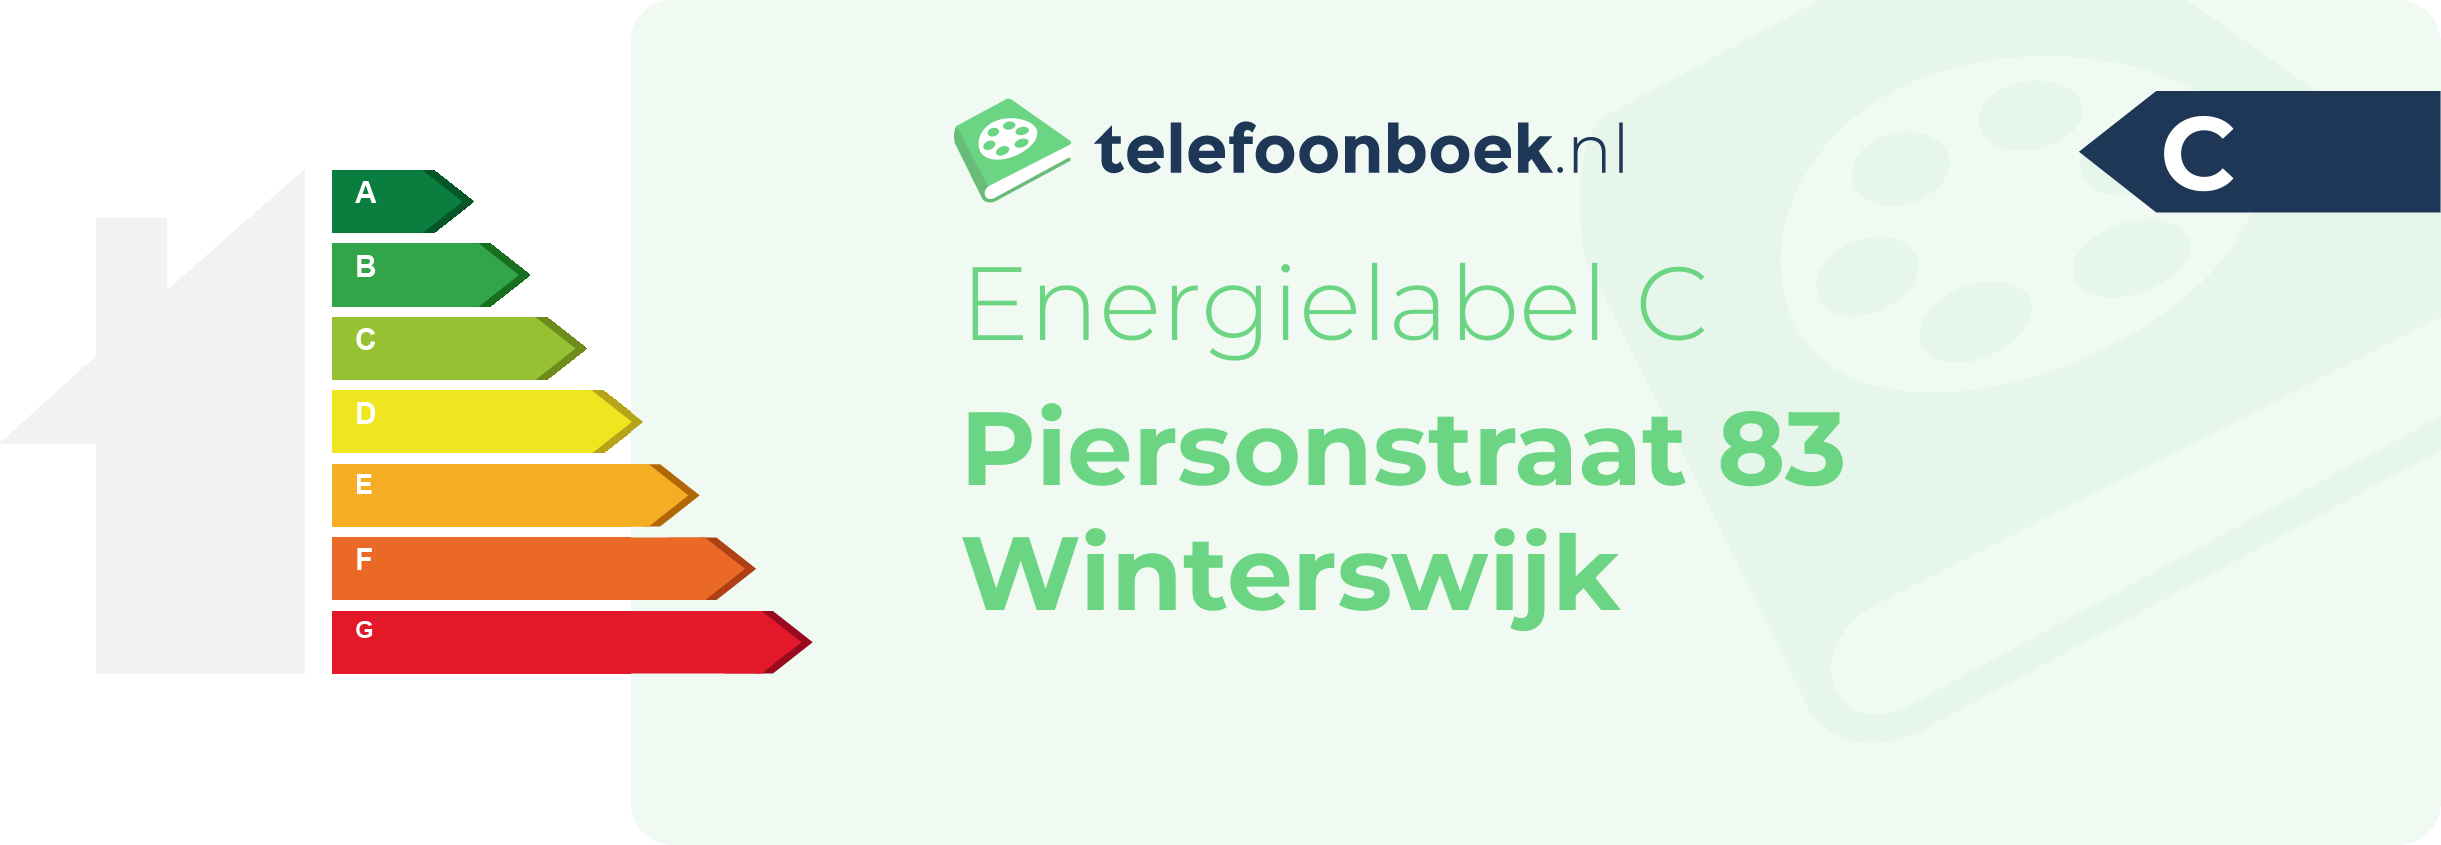 Energielabel Piersonstraat 83 Winterswijk